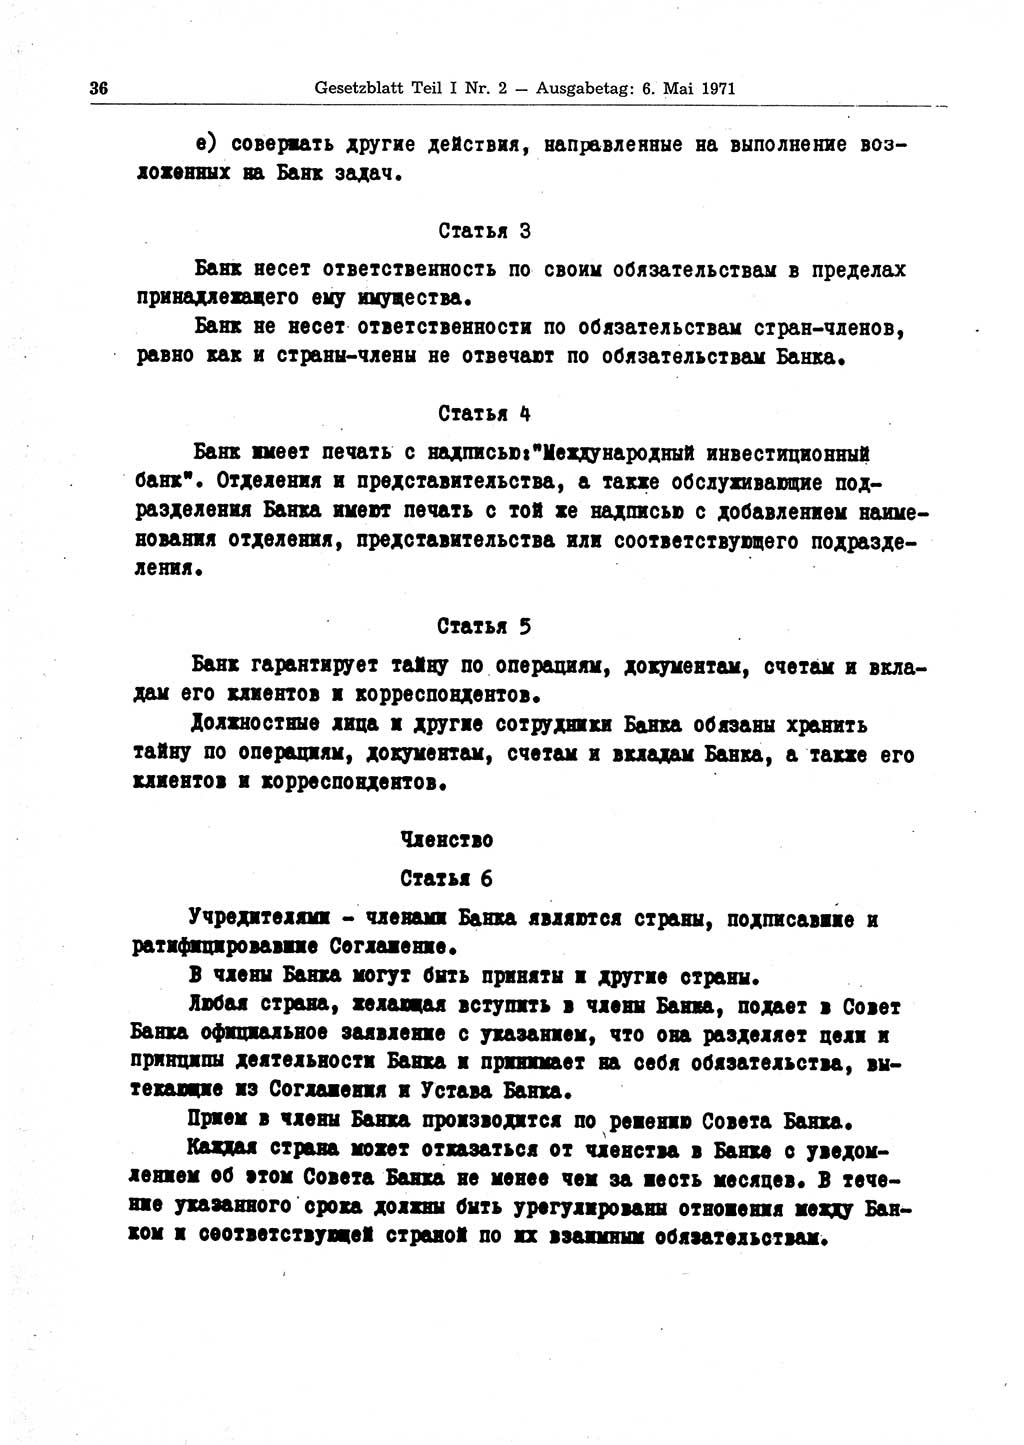 Gesetzblatt (GBl.) der Deutschen Demokratischen Republik (DDR) Teil Ⅰ 1971, Seite 36 (GBl. DDR Ⅰ 1971, S. 36)